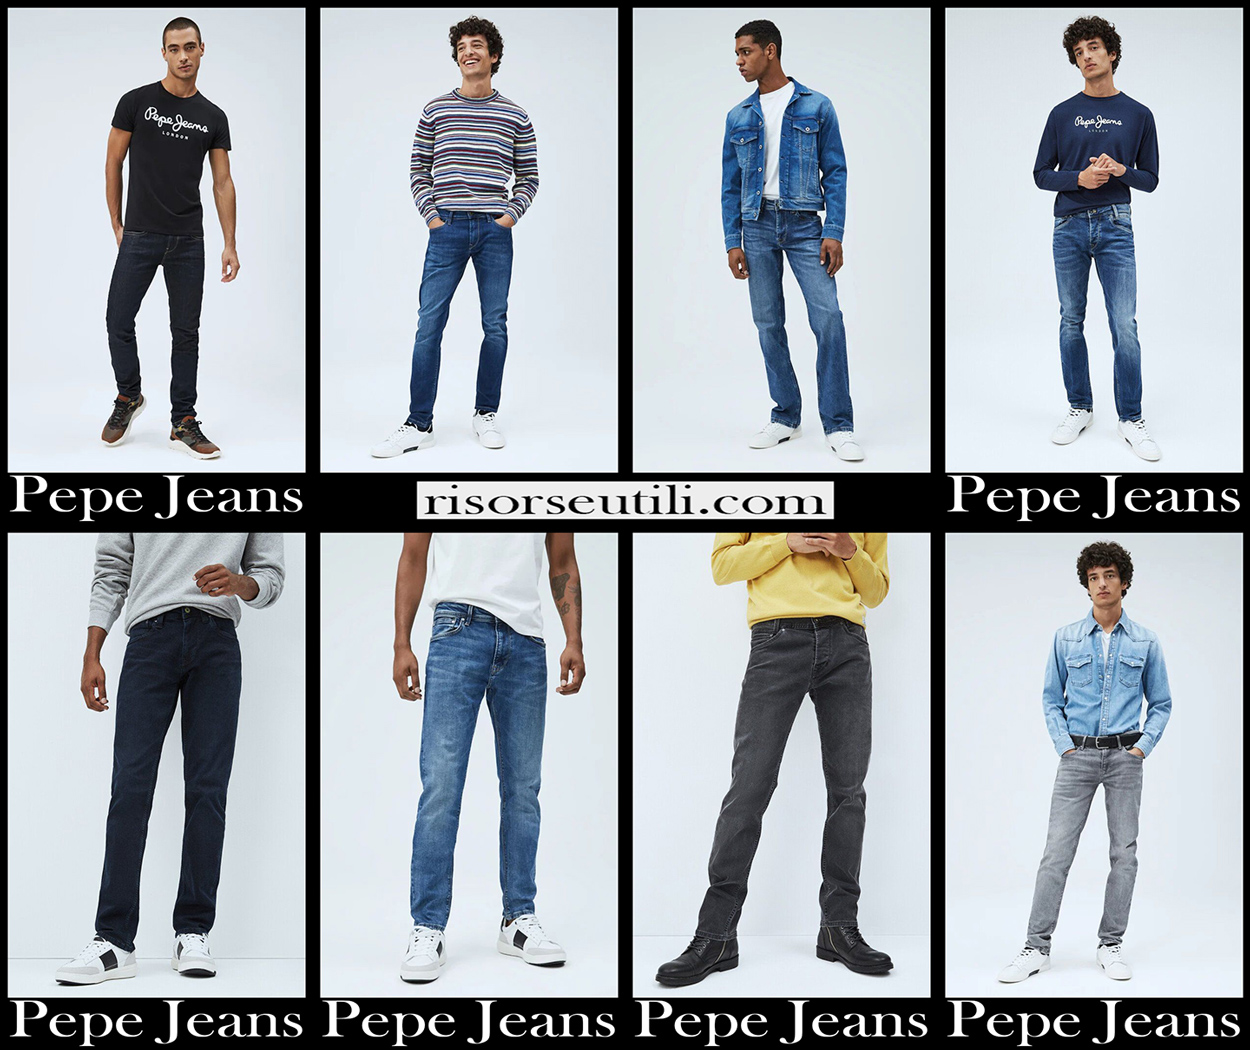 New jeans имена. Участники Нью джинс. New Jeans участники. Нью джинс карточки. Тест Нью джинс.